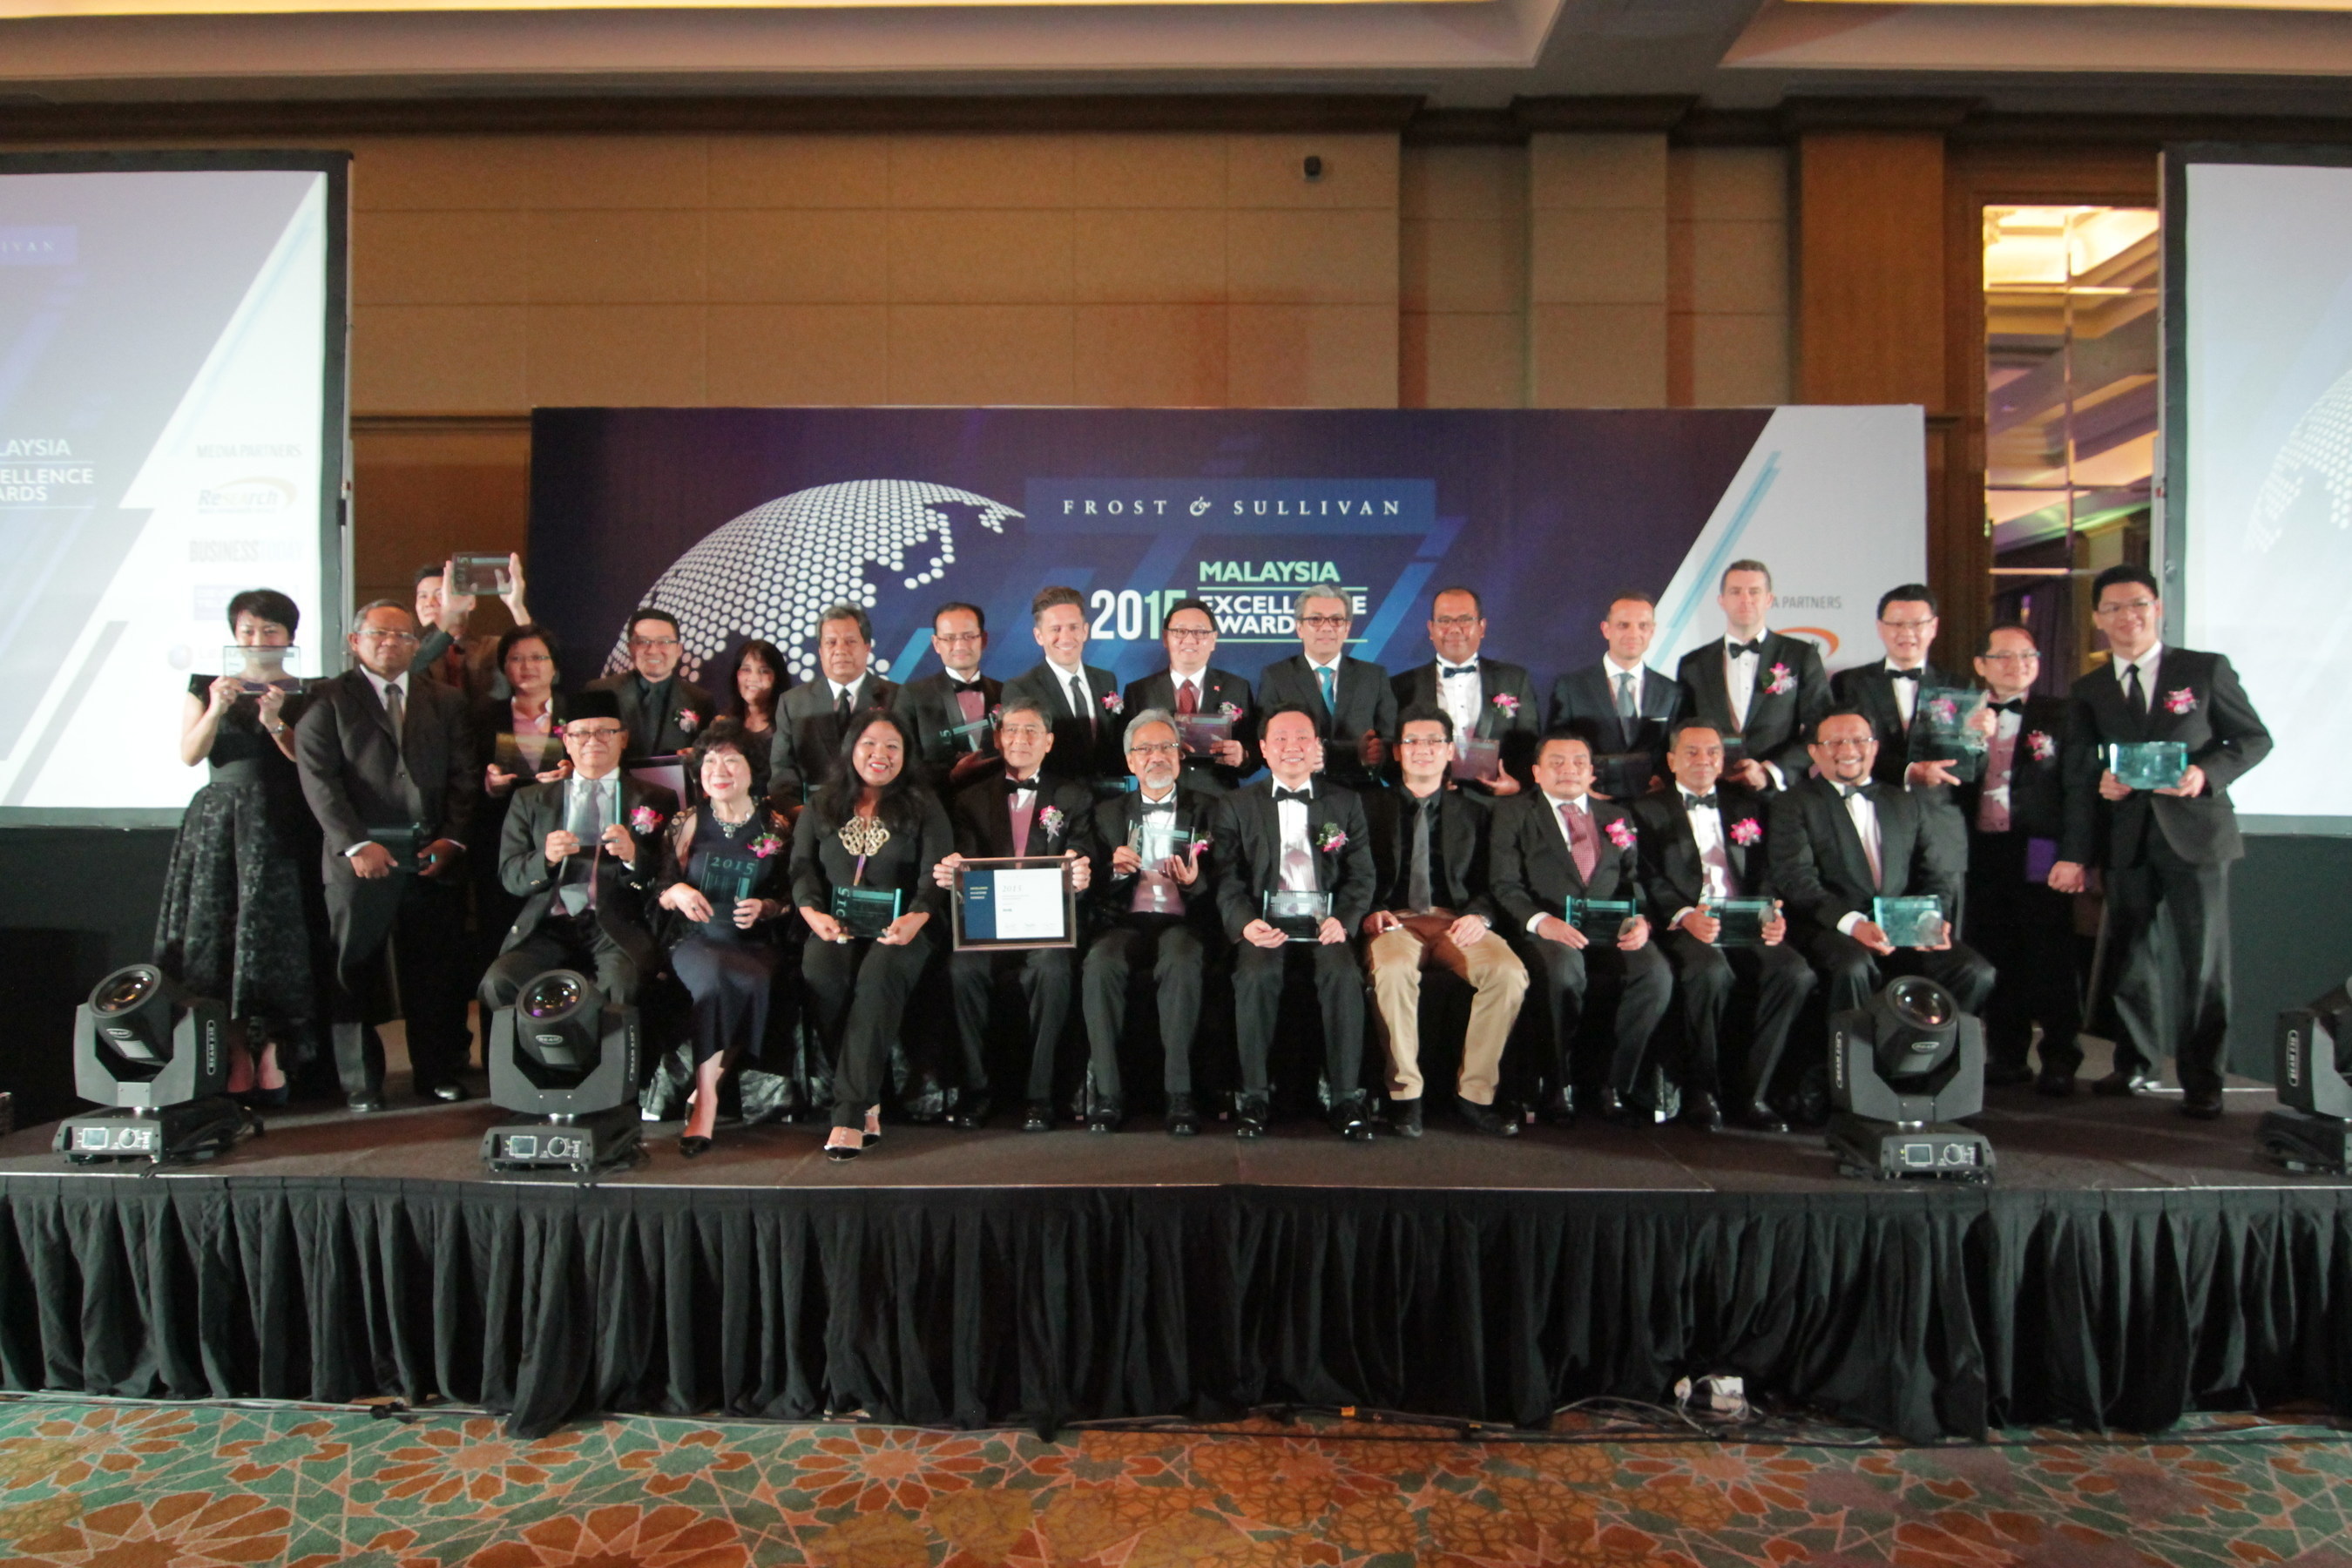 2015 Malaysia Excellence Award recipients